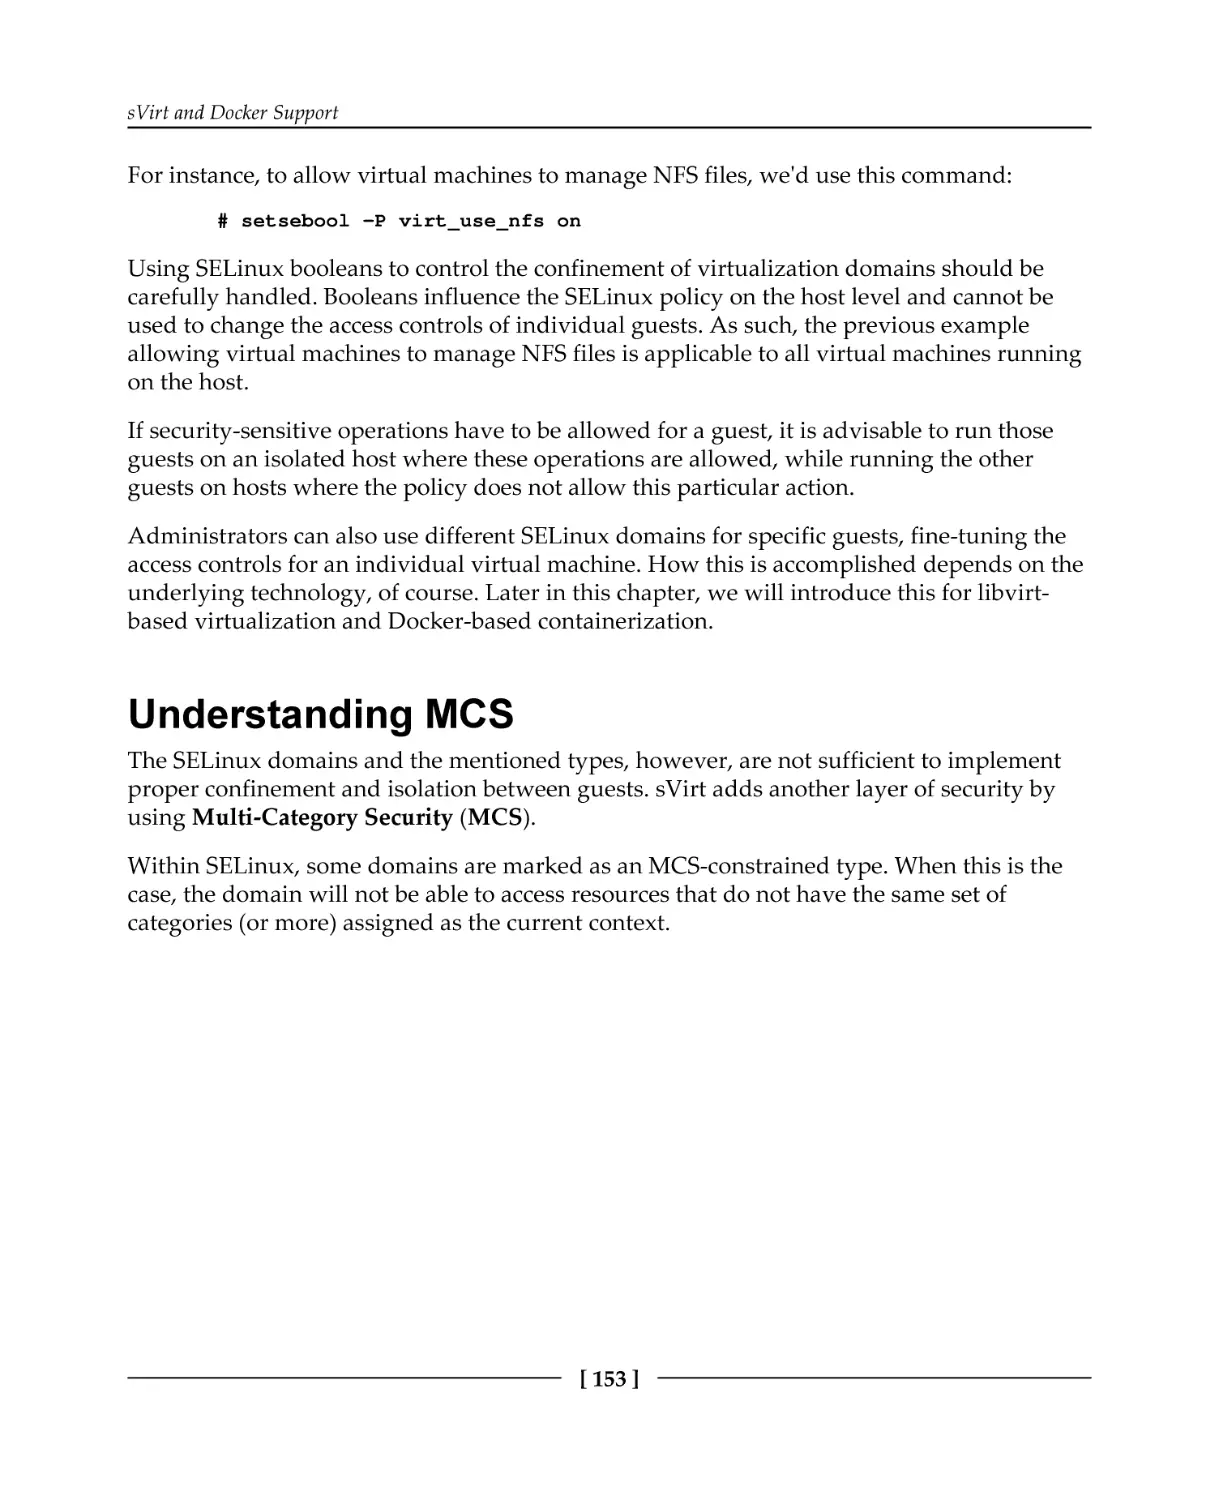 Understanding MCS